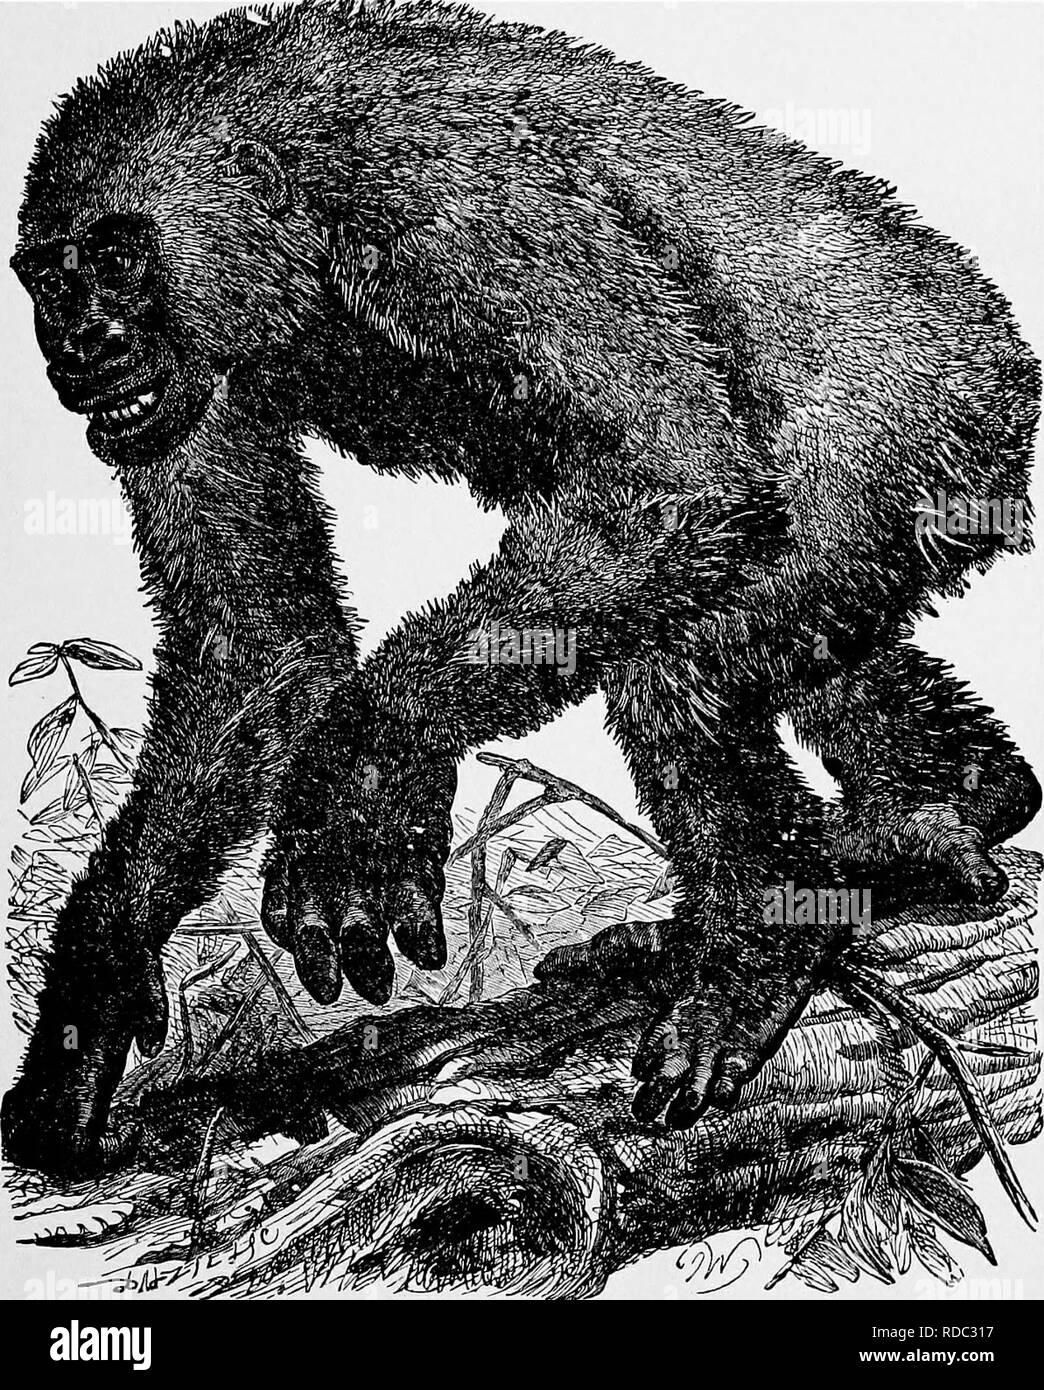 . L'histoire naturelle populaire . Zoologie. Le gorille, Gorilla 3 attaques jamais homme sans provocation. '' Njina laisser seul, ils disent, ' et Njina vous laissent tranquille." Mais quand le gorille, surpris alors que l'alimentation ou l'endormi, est soudainement mis à la baie, il se déplace dans une sorte de demi-cercle, en gardant ses yeux fixés sur l'homme, et poussant un cri à l'aise, se plaindre.. Gorille.-{Troglodytes Gorilla). Si le chasseur tire sur lui, et le manque d'armes à feu, l'incendie ou si l'ape est blessé, il peut parfois s'enfuir ; parfois, cependant, il se charge, avec son regard féroce, sa lèvre abaissée, ses cheveux tombant sur Banque D'Images